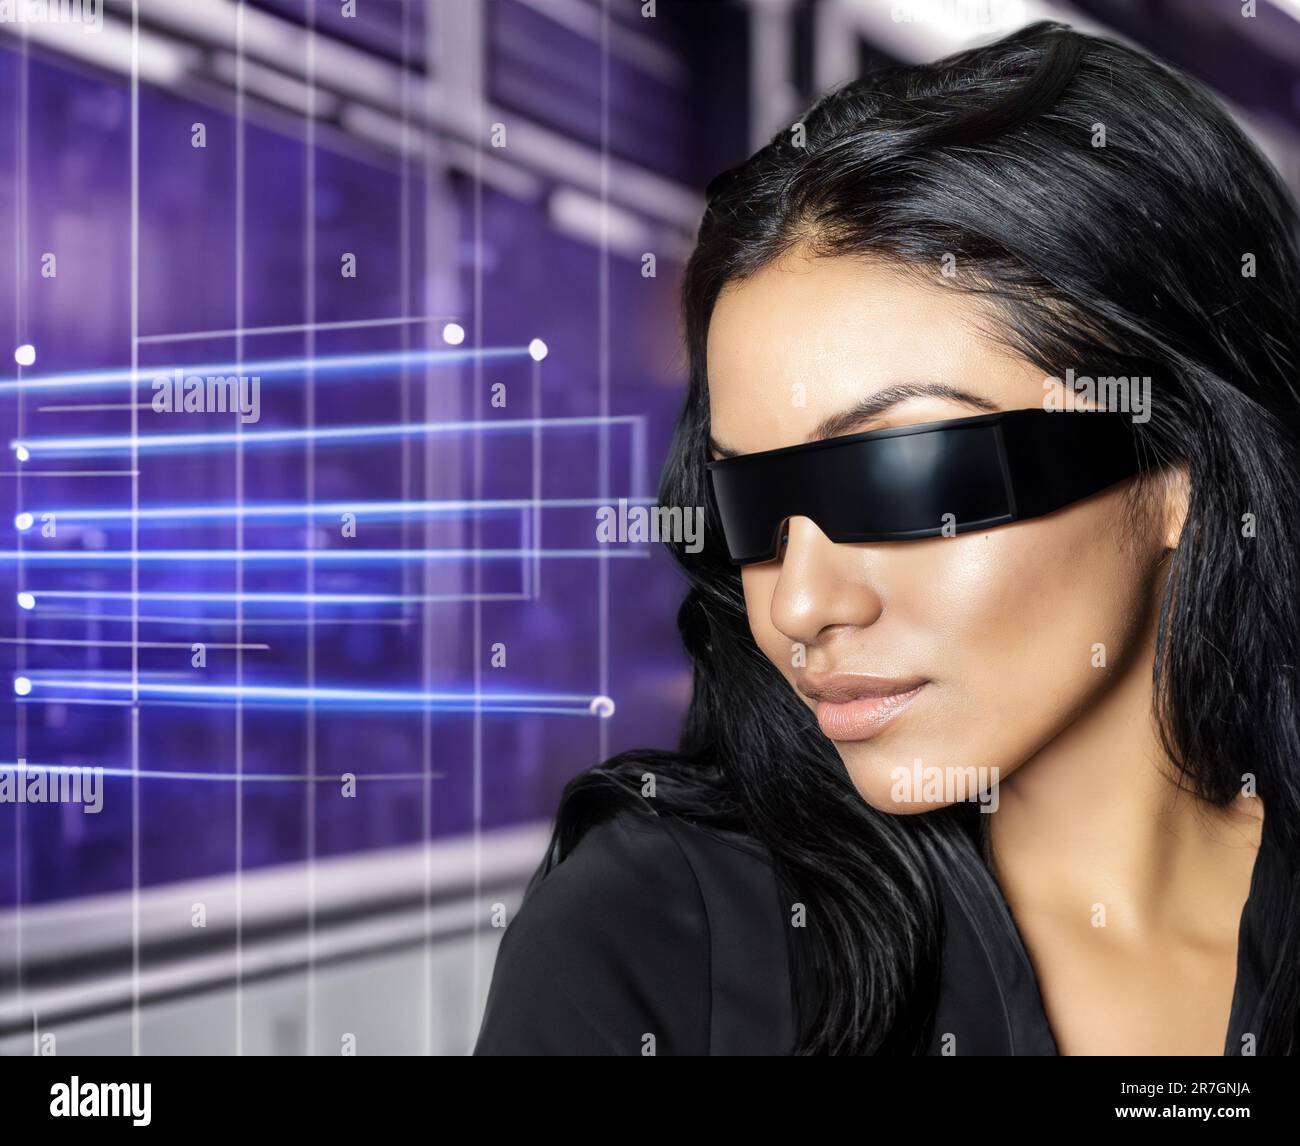 Occhiali futuristici High Tech Computing Concept Image Foto stock